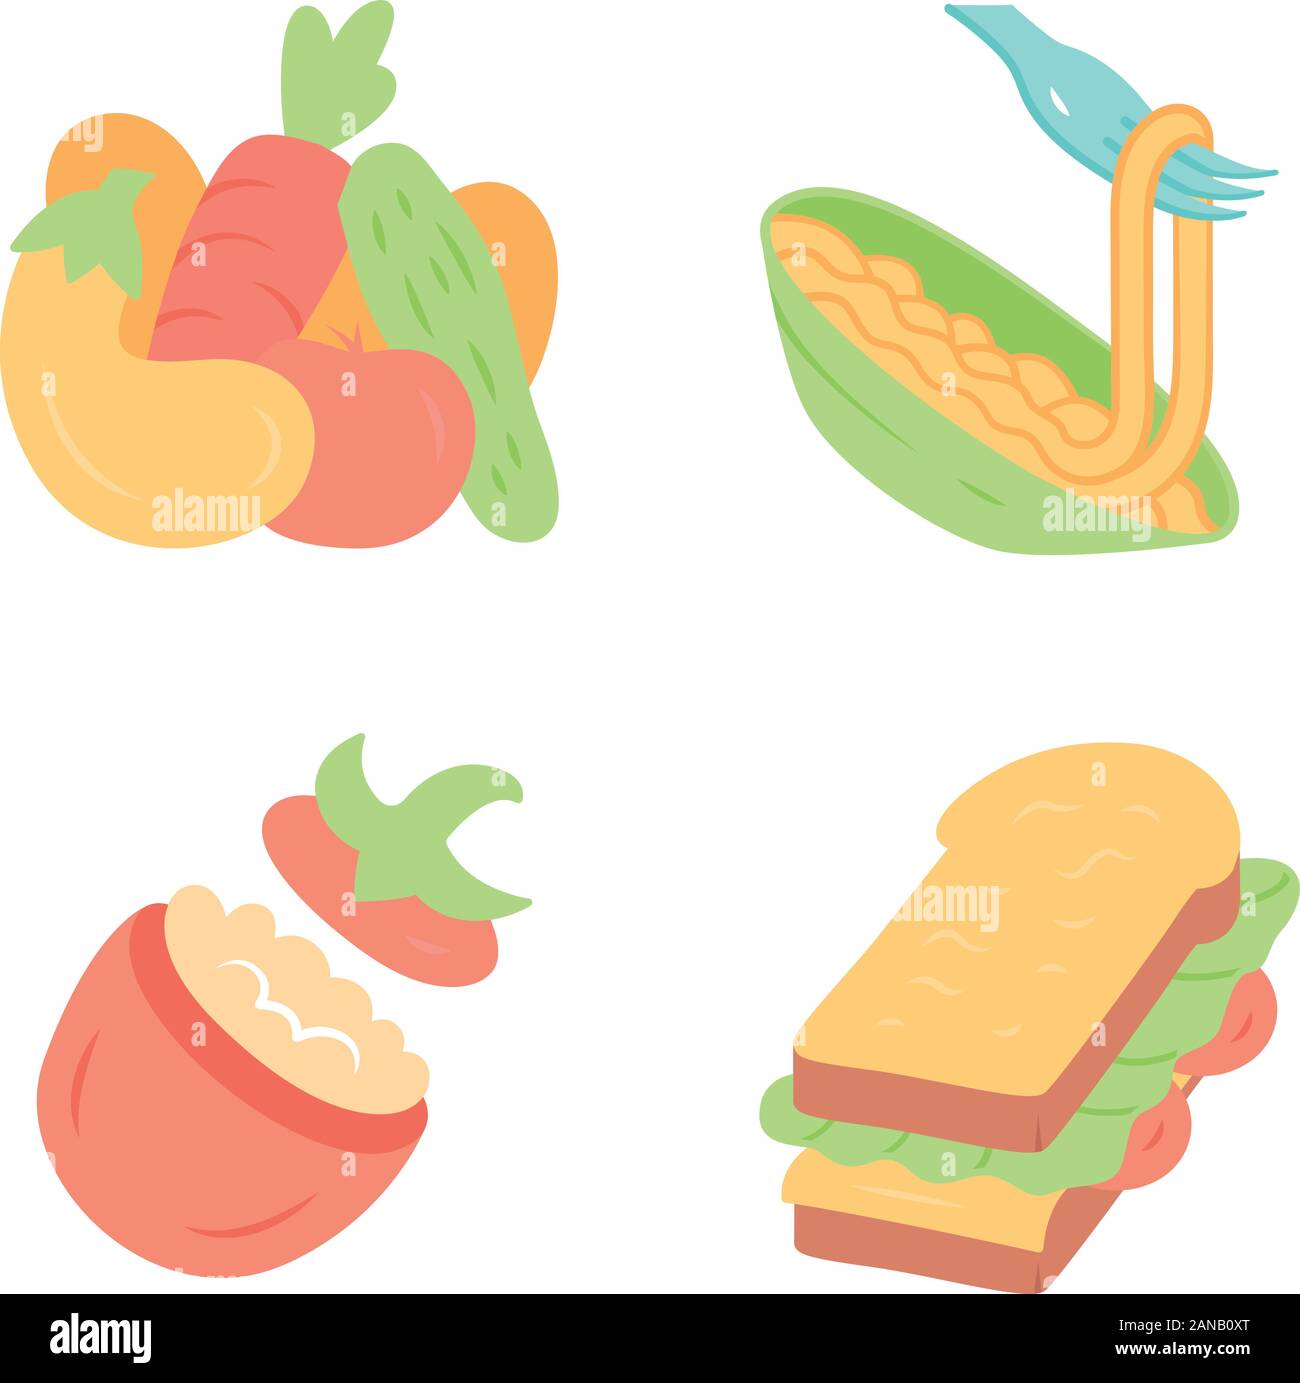 Nahrhafte Lebensmittel flache Bauweise lange Schatten farbige Symbole gesetzt. Gemüse, Pasta, gefüllte Tomaten, Sandwich. Cafe, Restaurant, Vorspeise. Gesunde Ernährung. Stock Vektor